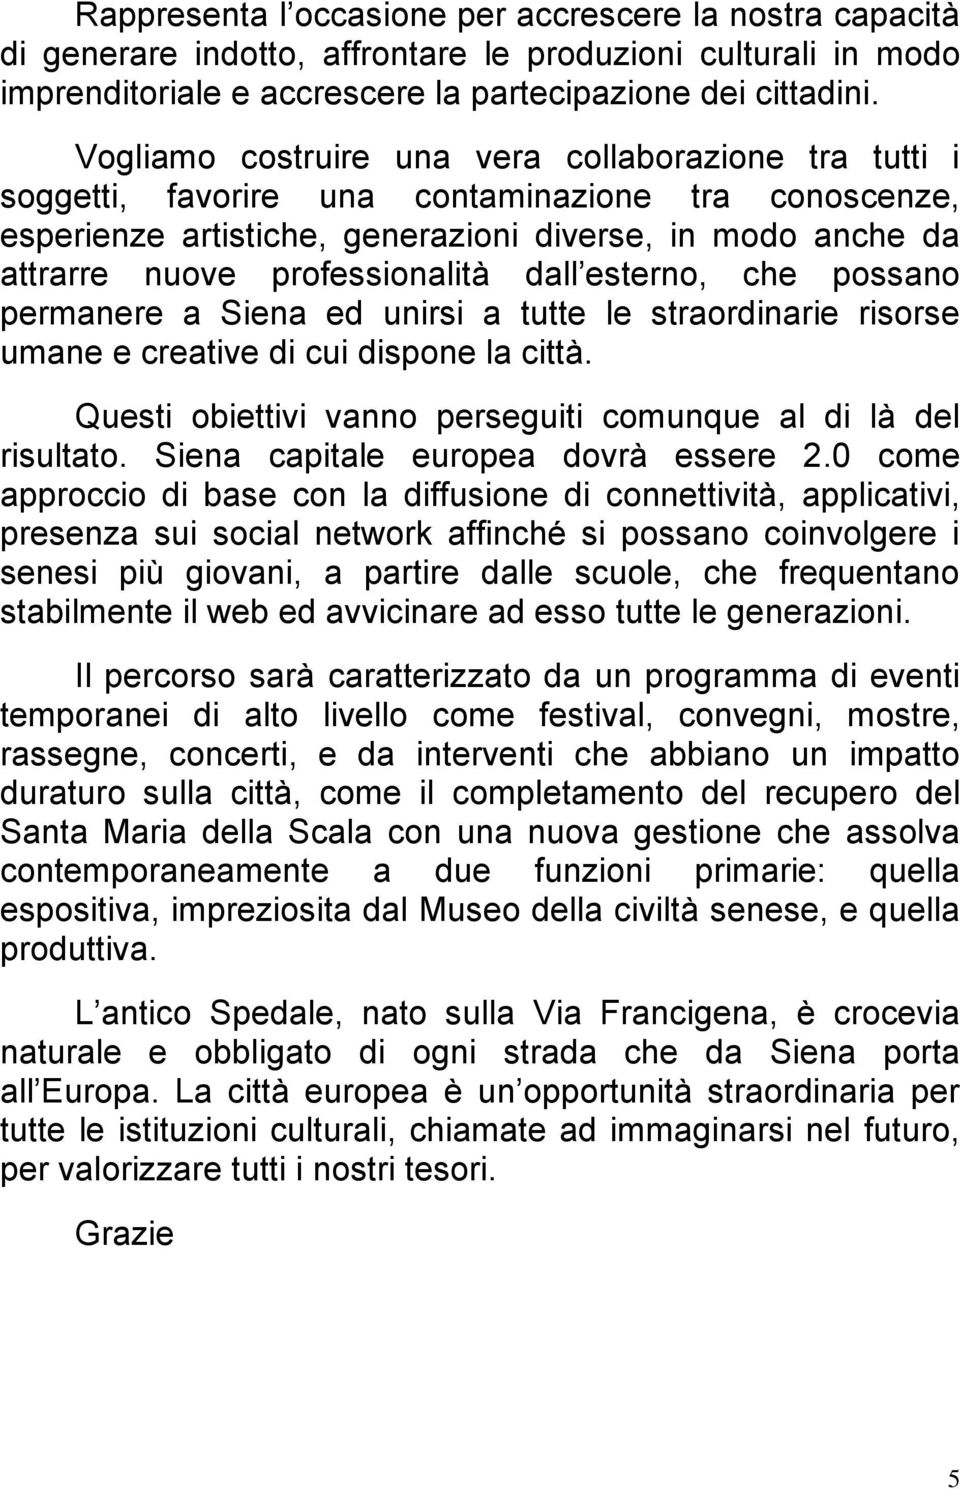 professionalità dall esterno, che possano permanere a Siena ed unirsi a tutte le straordinarie risorse umane e creative di cui dispone la città.